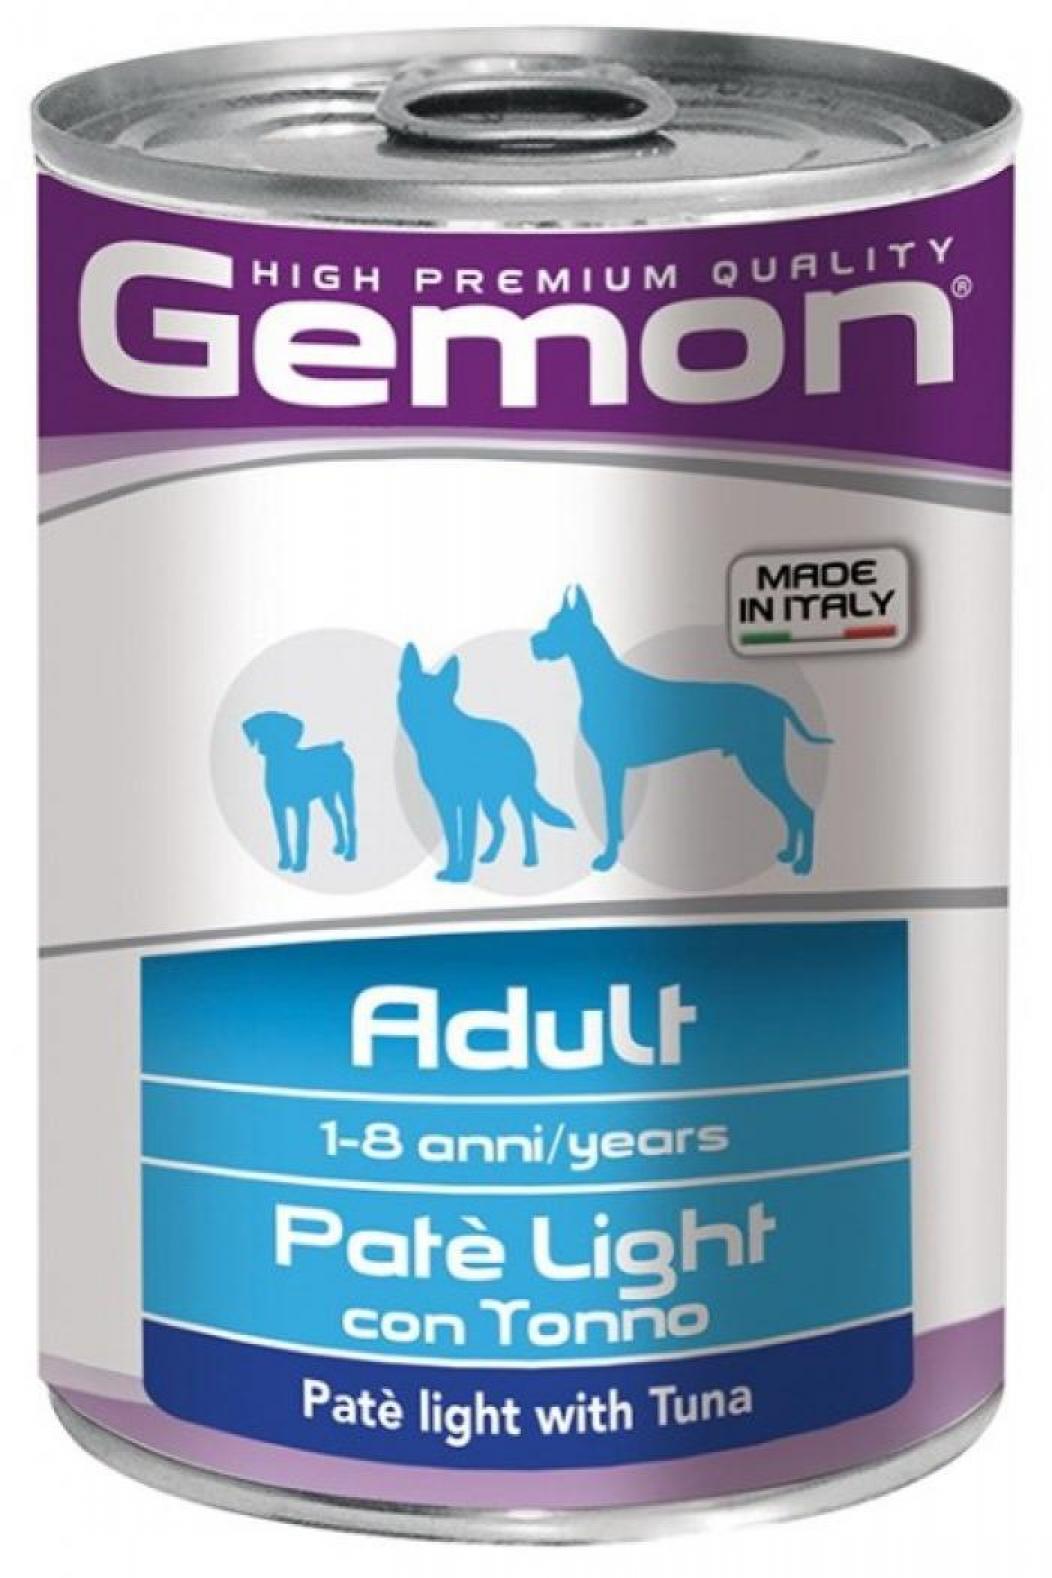 Gemon Dog Light консервы для собак облегченный паштет тунец 400г, 100100811